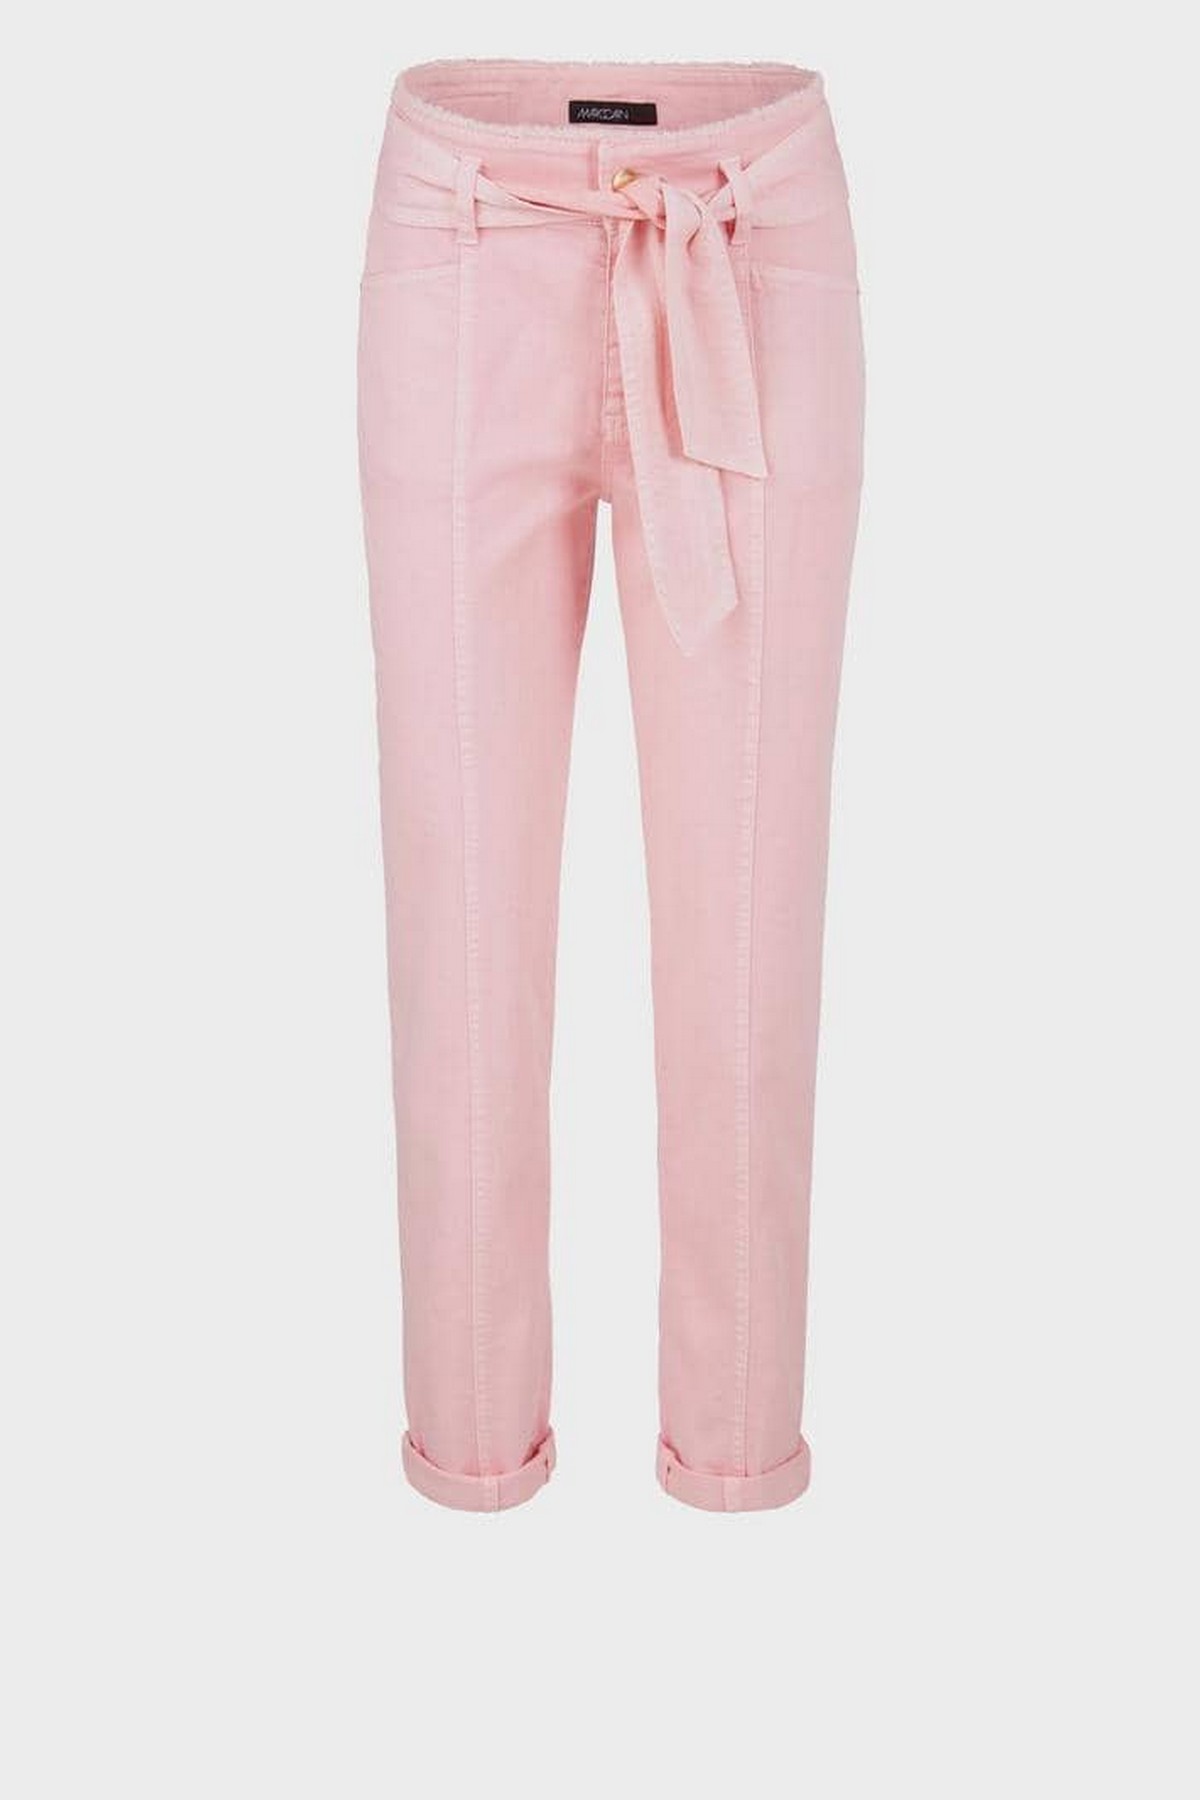 Broek jeans strikceintuur in de kleur roze van het merk Marc Cain